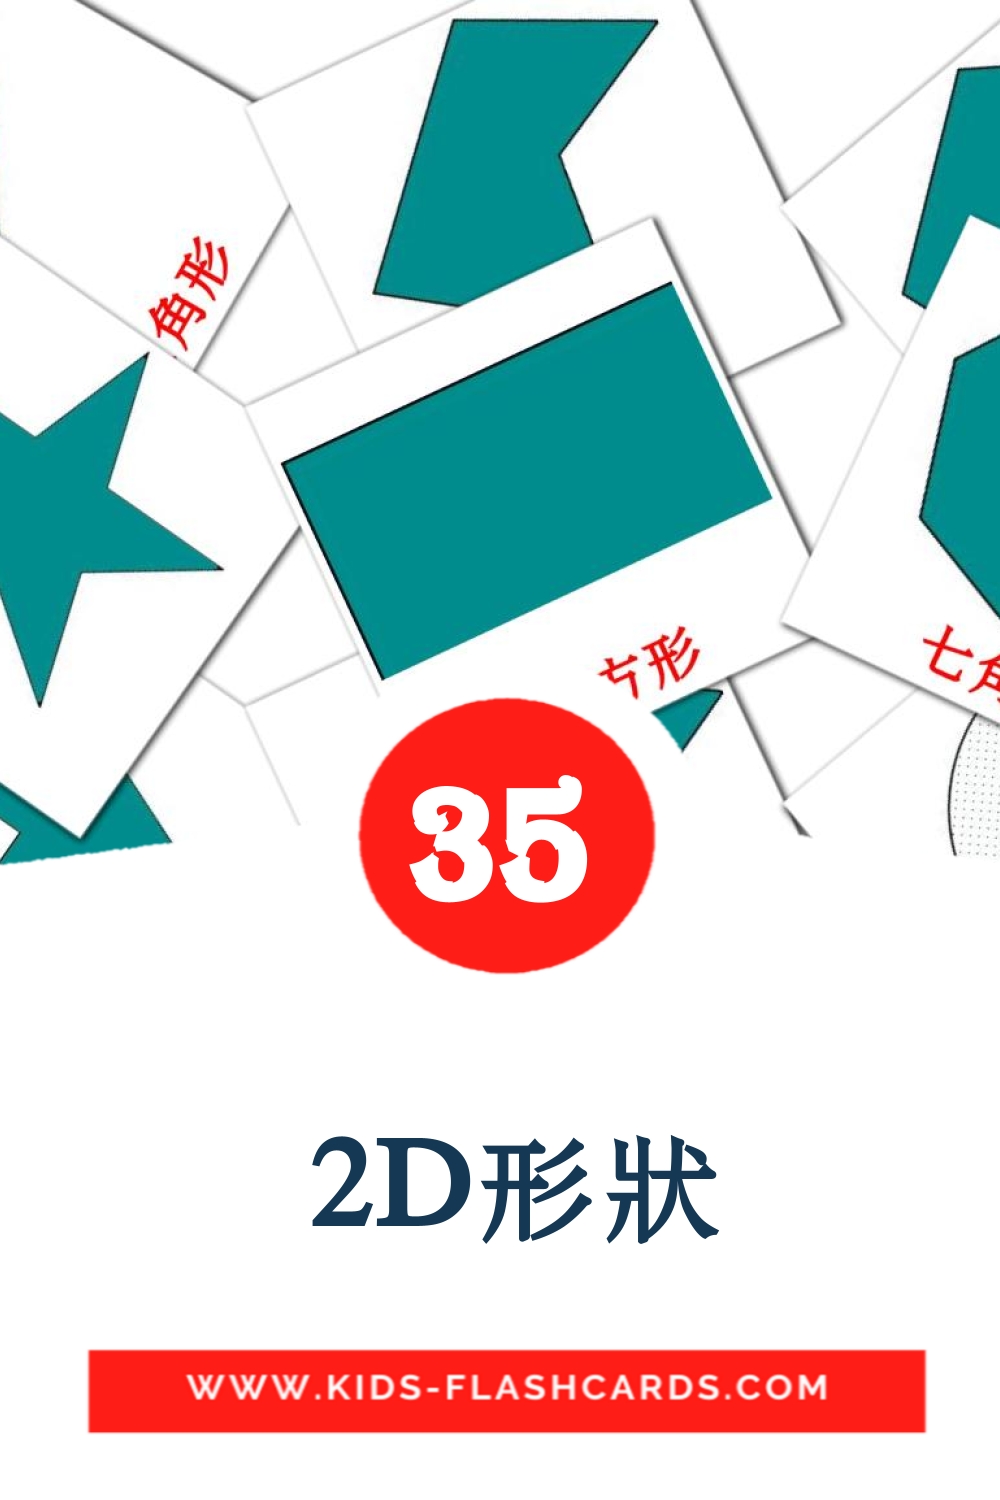 35 tarjetas didacticas de  2D形狀 para el jardín de infancia en chino(tradicional)